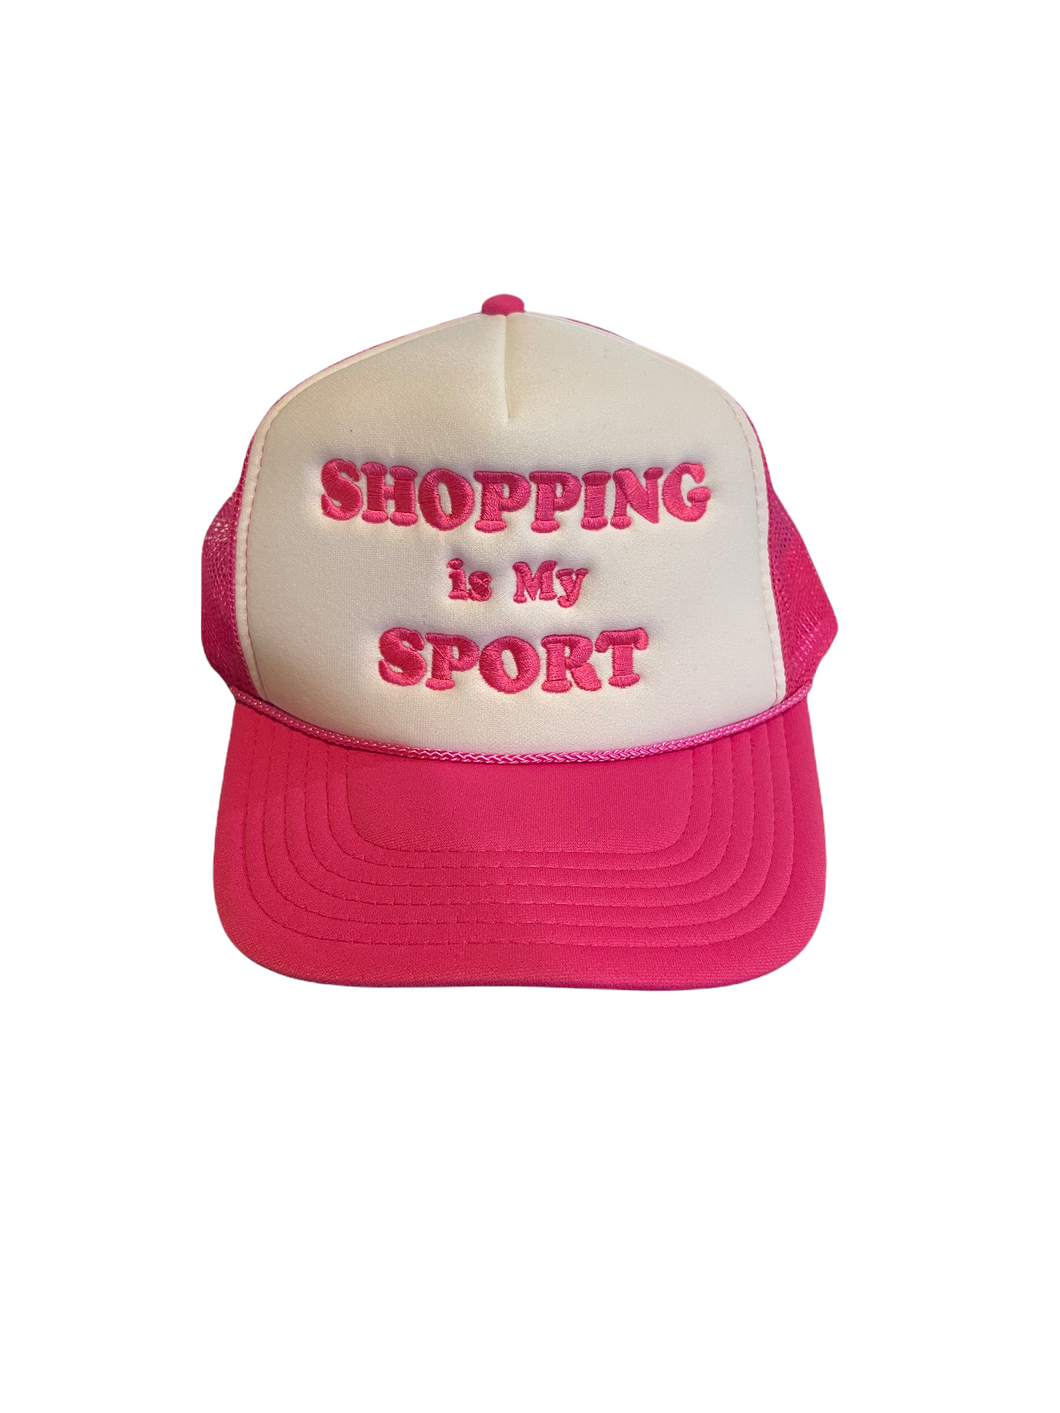 Shopping is My Sport Trucker Hat